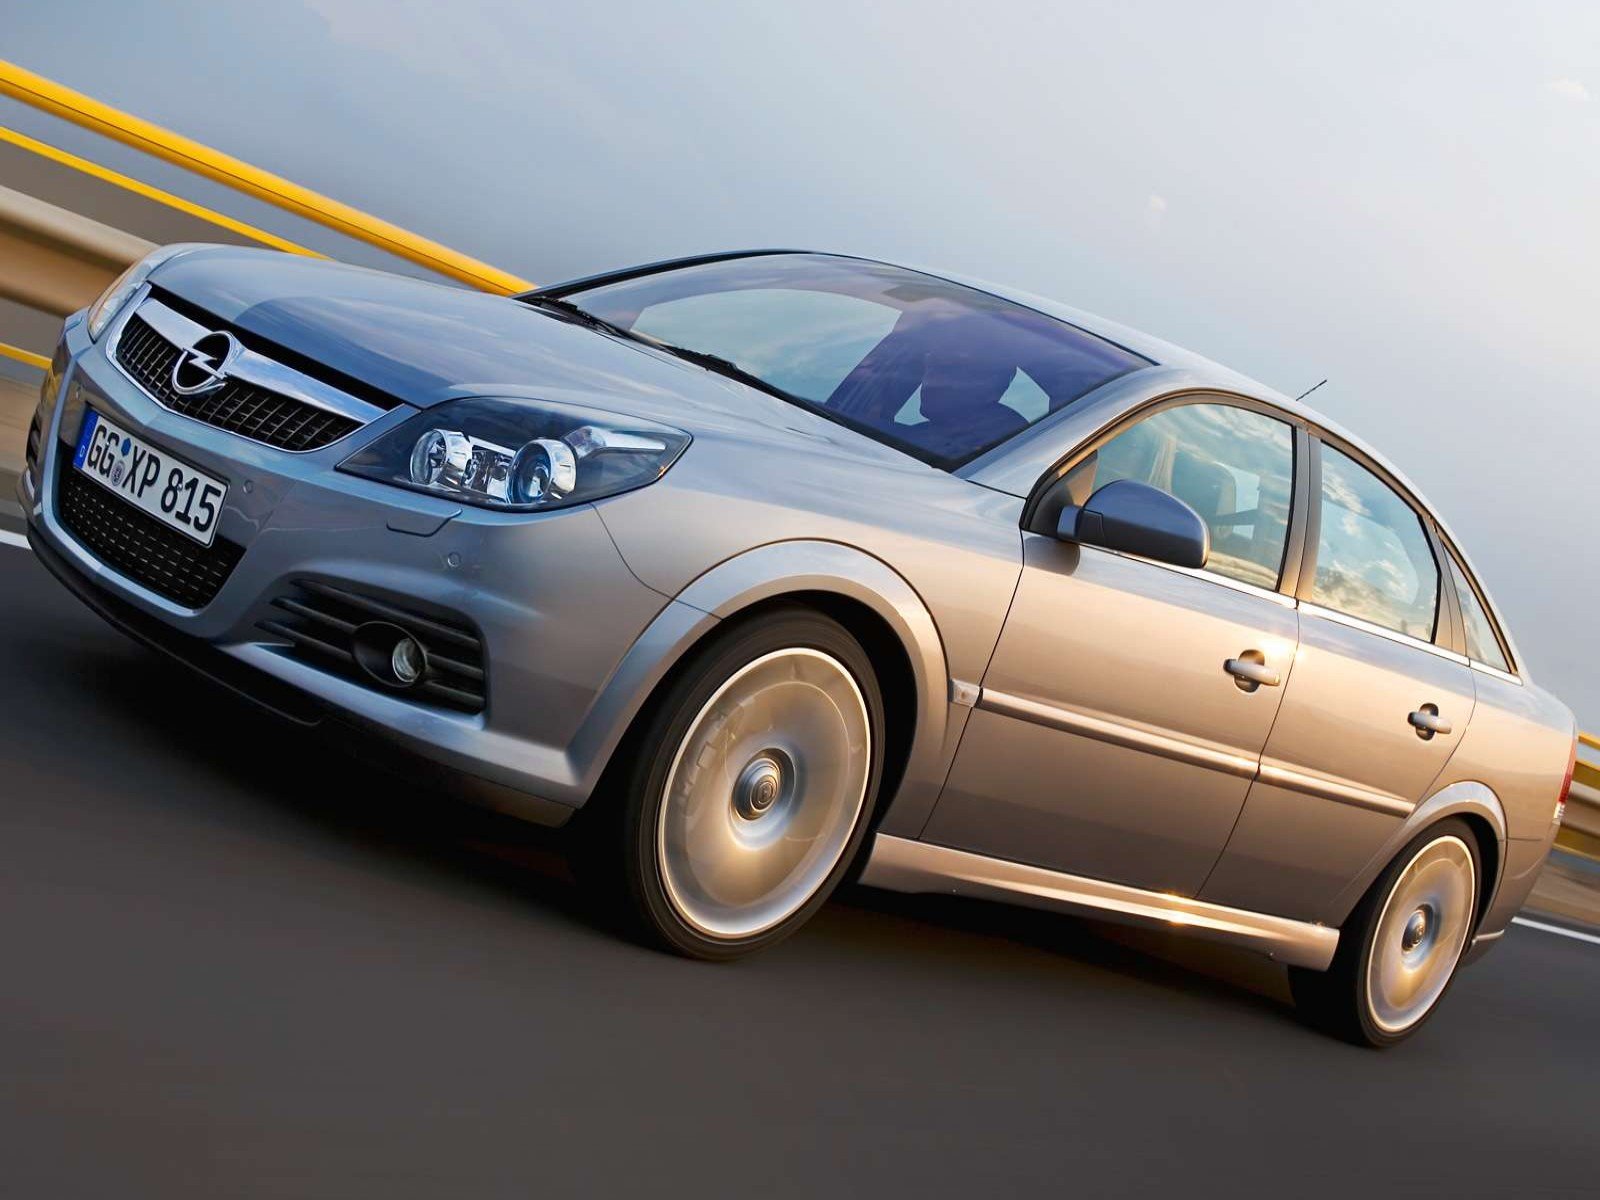 Opel Vectra 1.8. Опель Вектра с 1.8 2006. Опель Вектра с 2.2 2006. Опель Вектра с 1.8 хэтчбек.